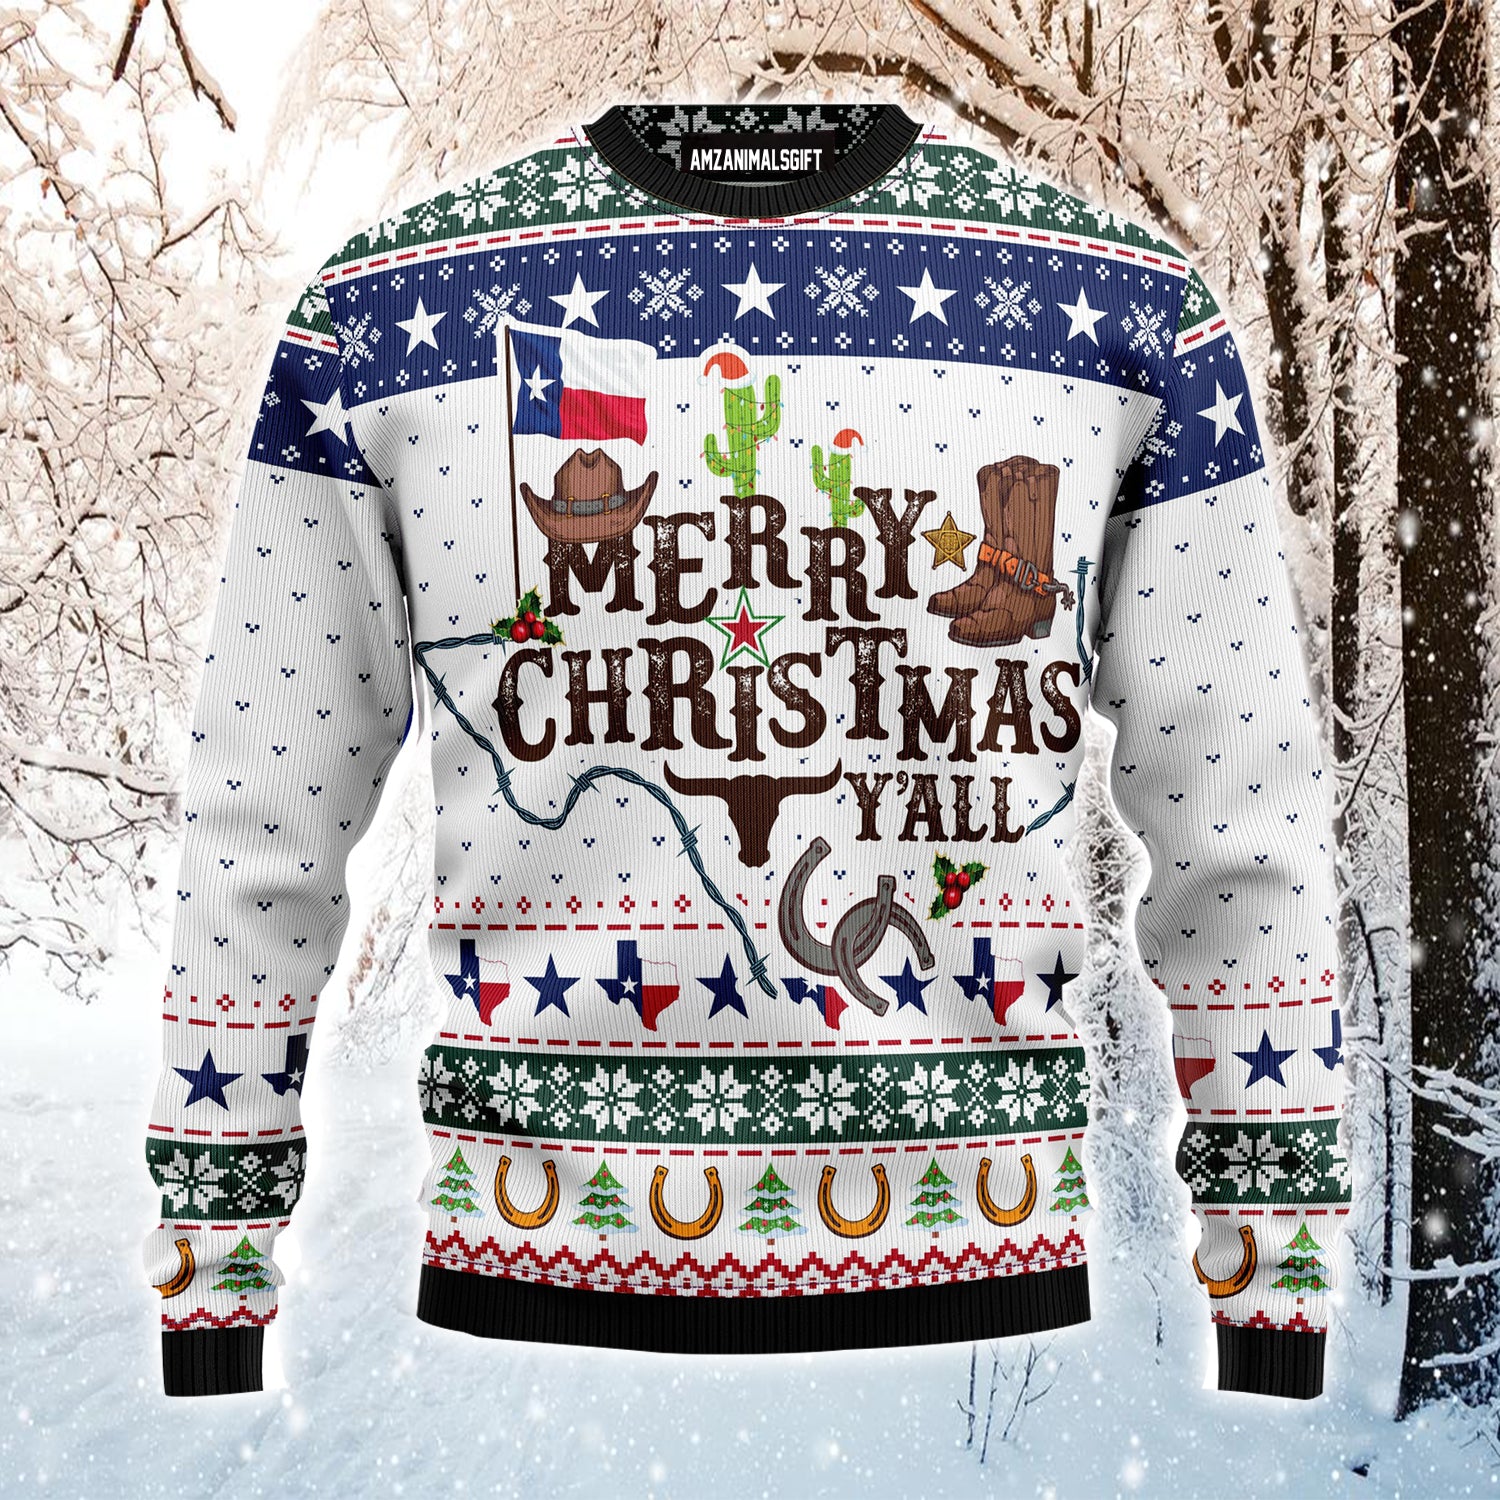 Merry Christmas Y'all Texas Ugly Christmas Sweater, Funny Christmas Ugly Sweater For Men & Women - Perfect Gift For Christmas, Texas Lovers